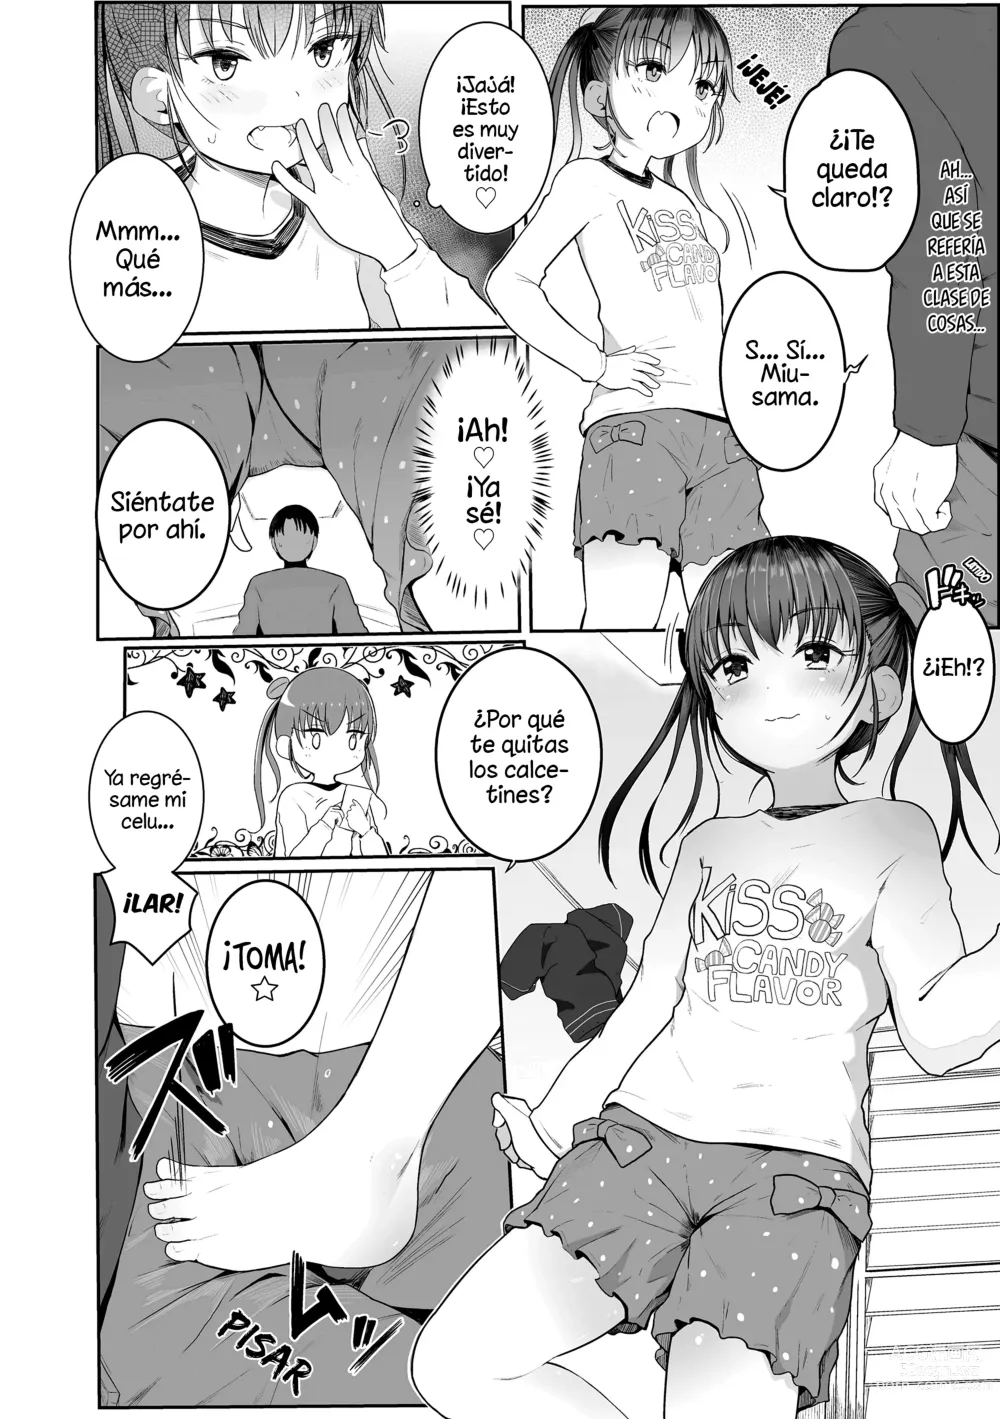 Page 6 of manga ¡Enséñame❤Sensei!